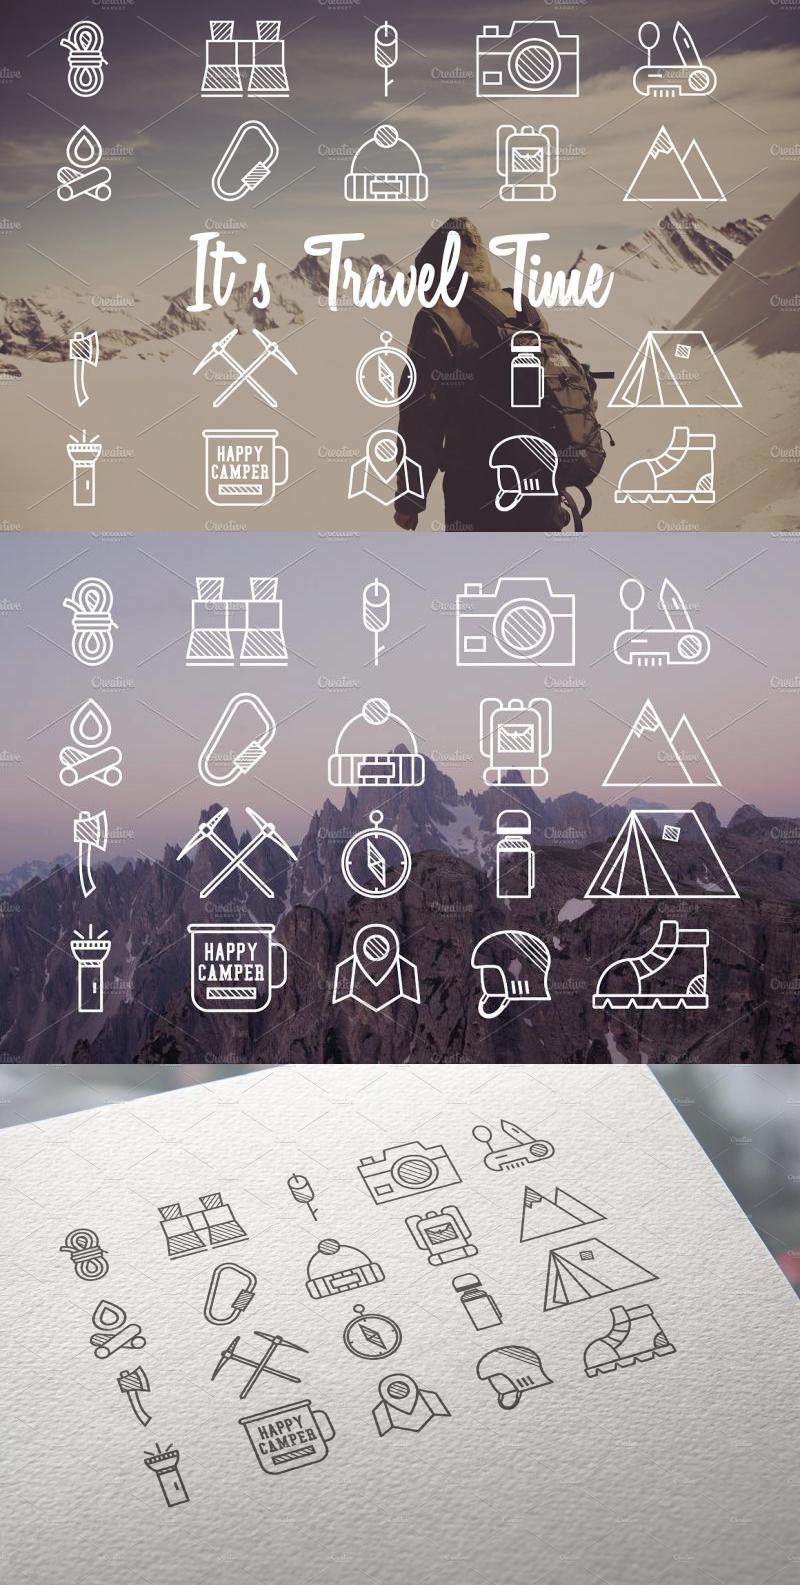 20 Mountain Icons